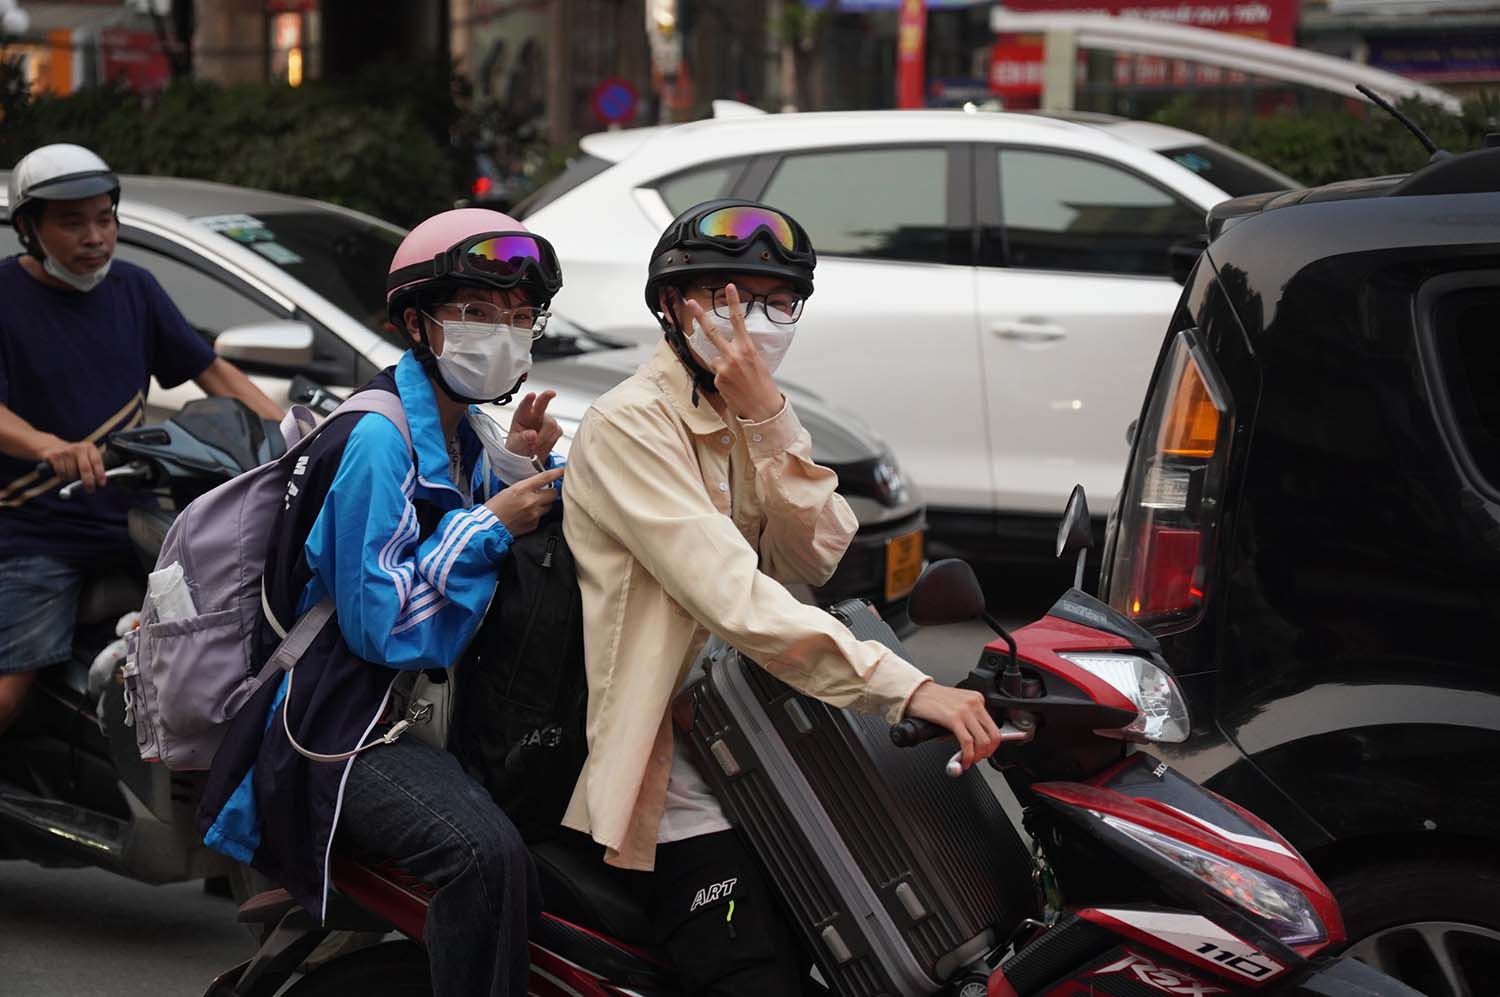 người dân mặc áo chống nắng, vừa chở theo đồ đạc trên xe máy để về quê.